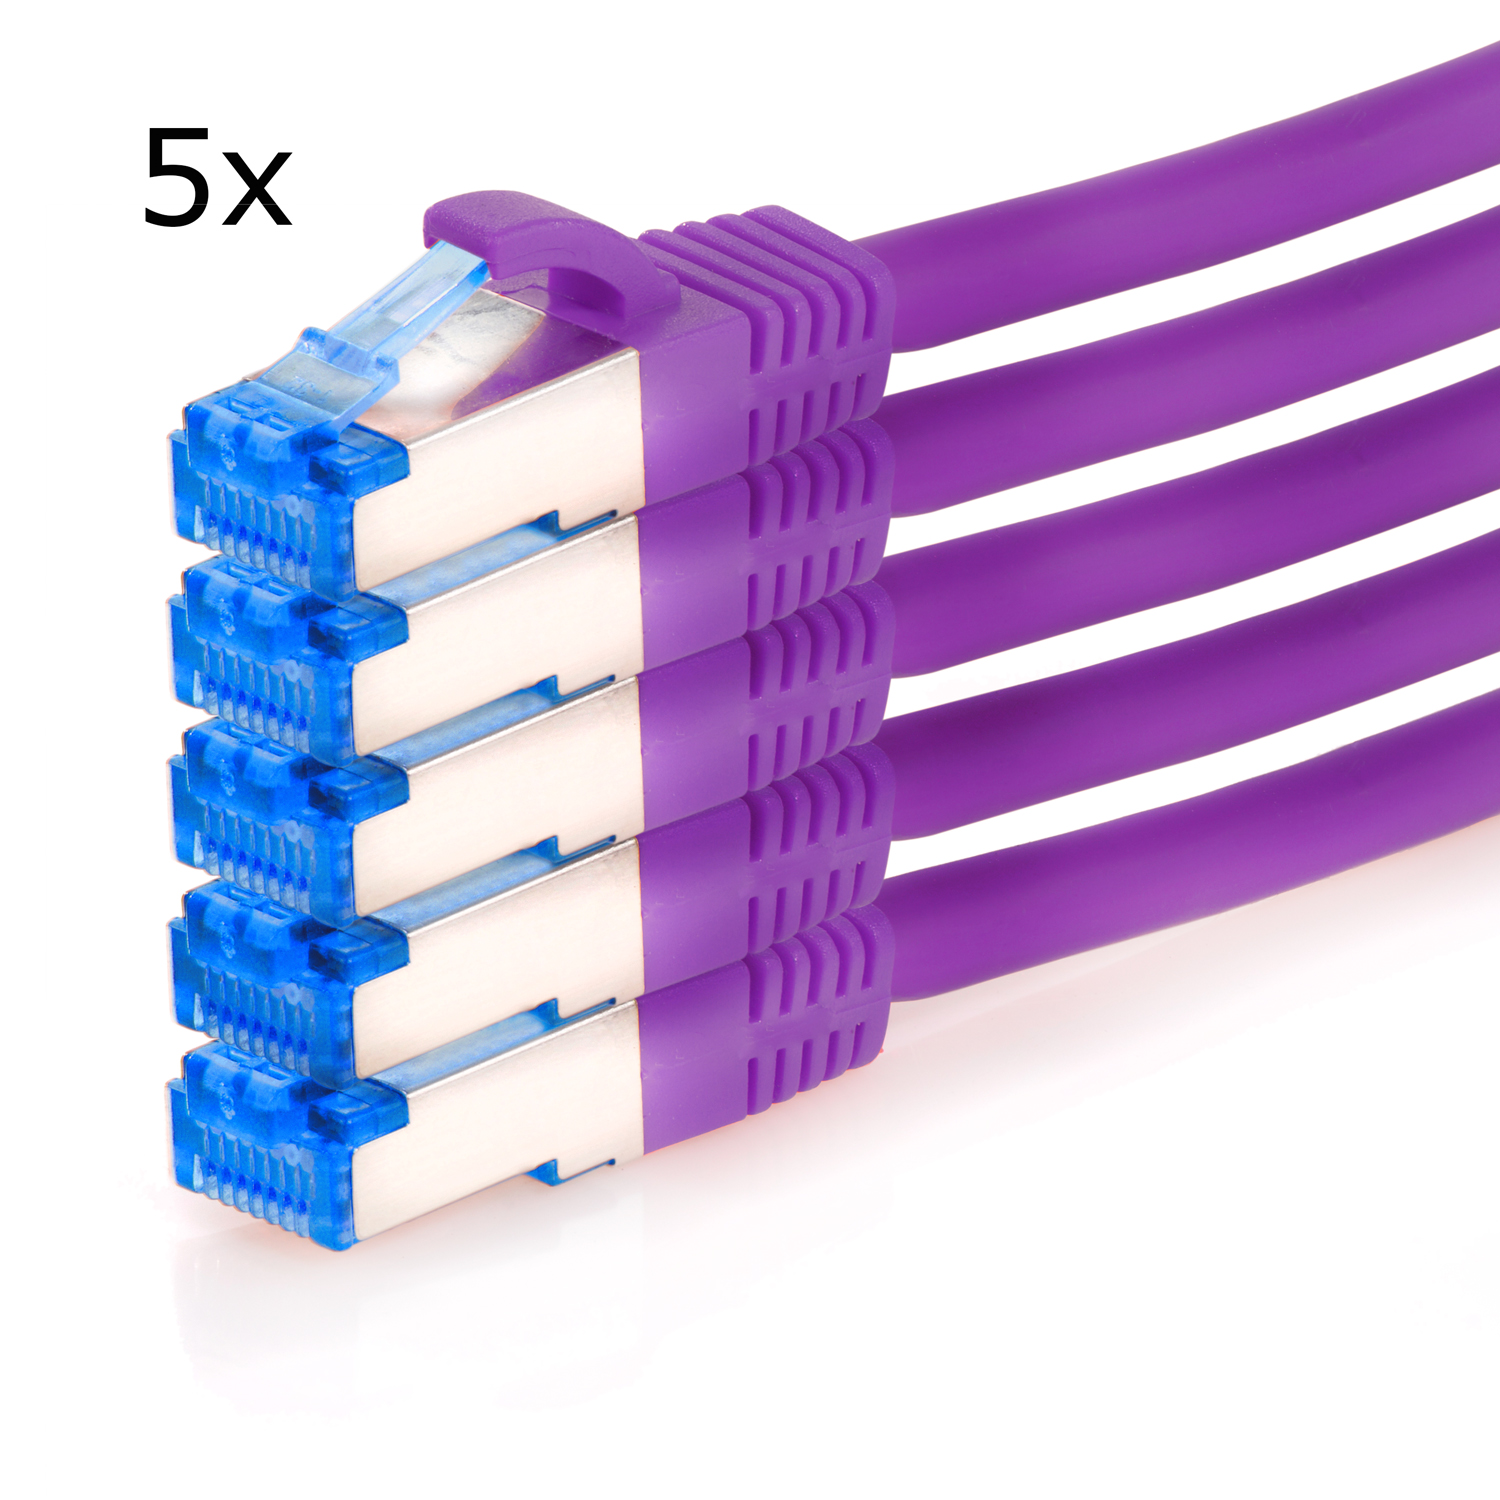 TPFNET 5er 1 1m Patchkabel violett, Netzwerkkabel, 10GBit, Netzwerkkabel Pack m / S/FTP